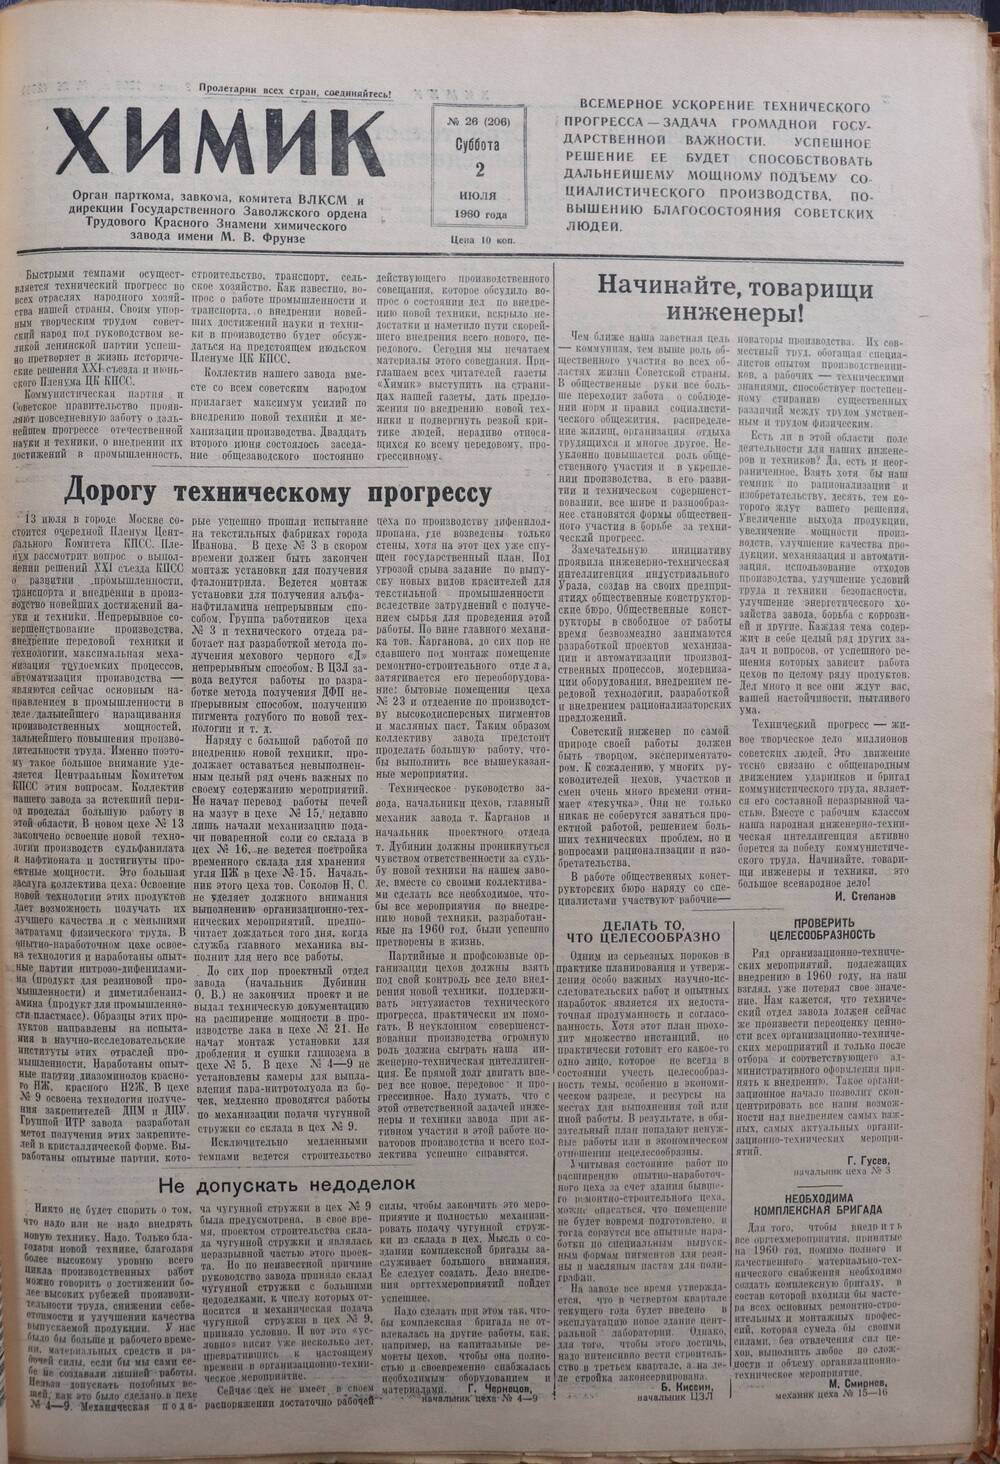 Газета «Химик» № 26 от 2 июля 1960 года.